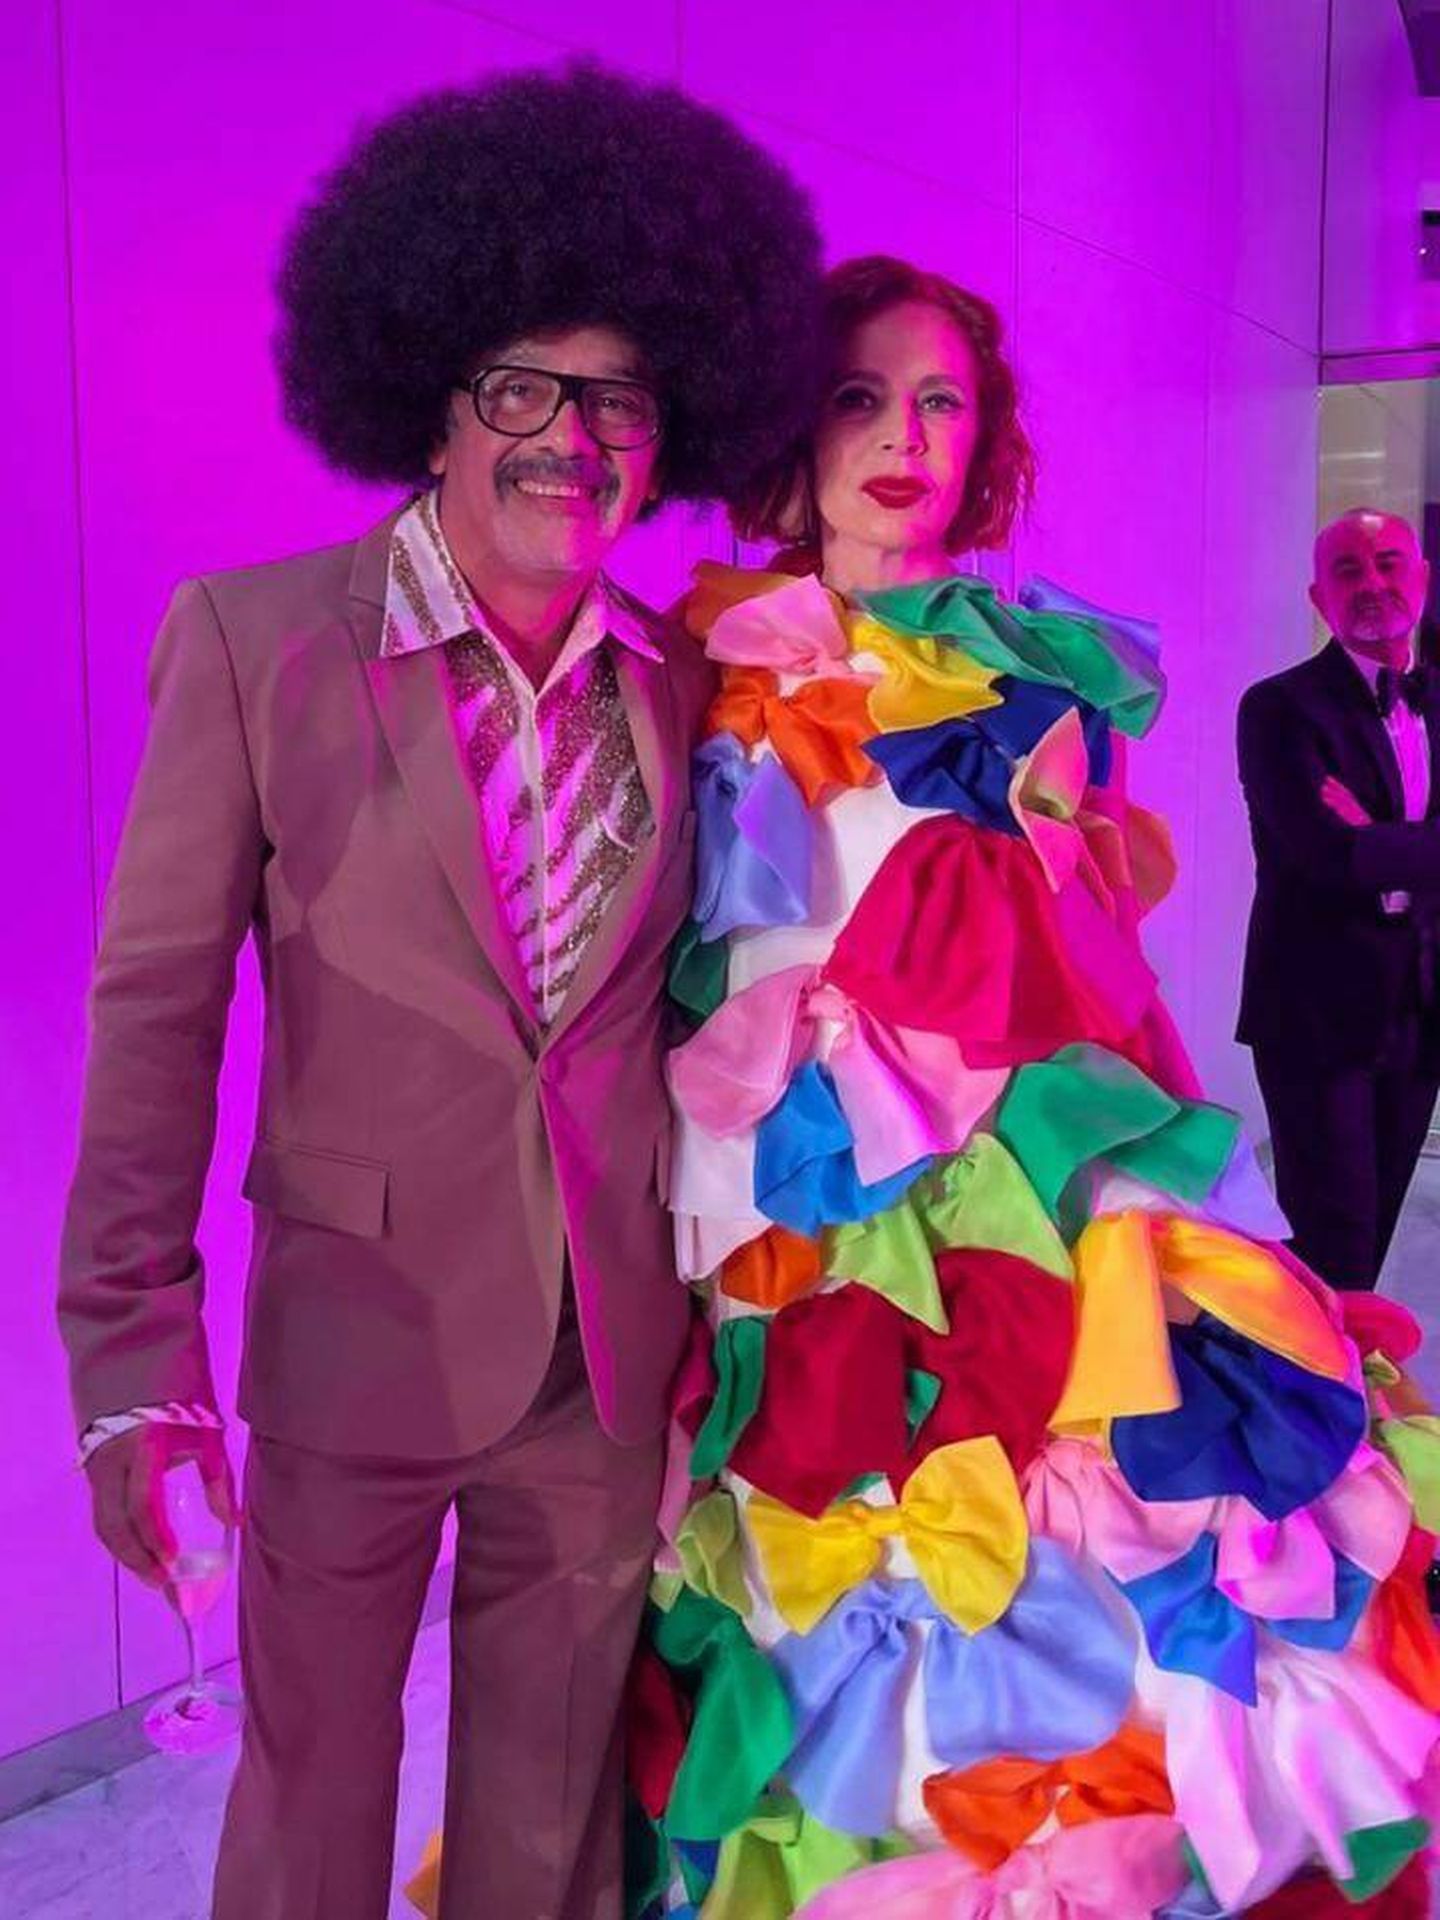 Ágatha Ruiz de la Prada comparte esta historia en Instagram del Baile de la Rosa. (Instagram/@agatharuizdelaprada)